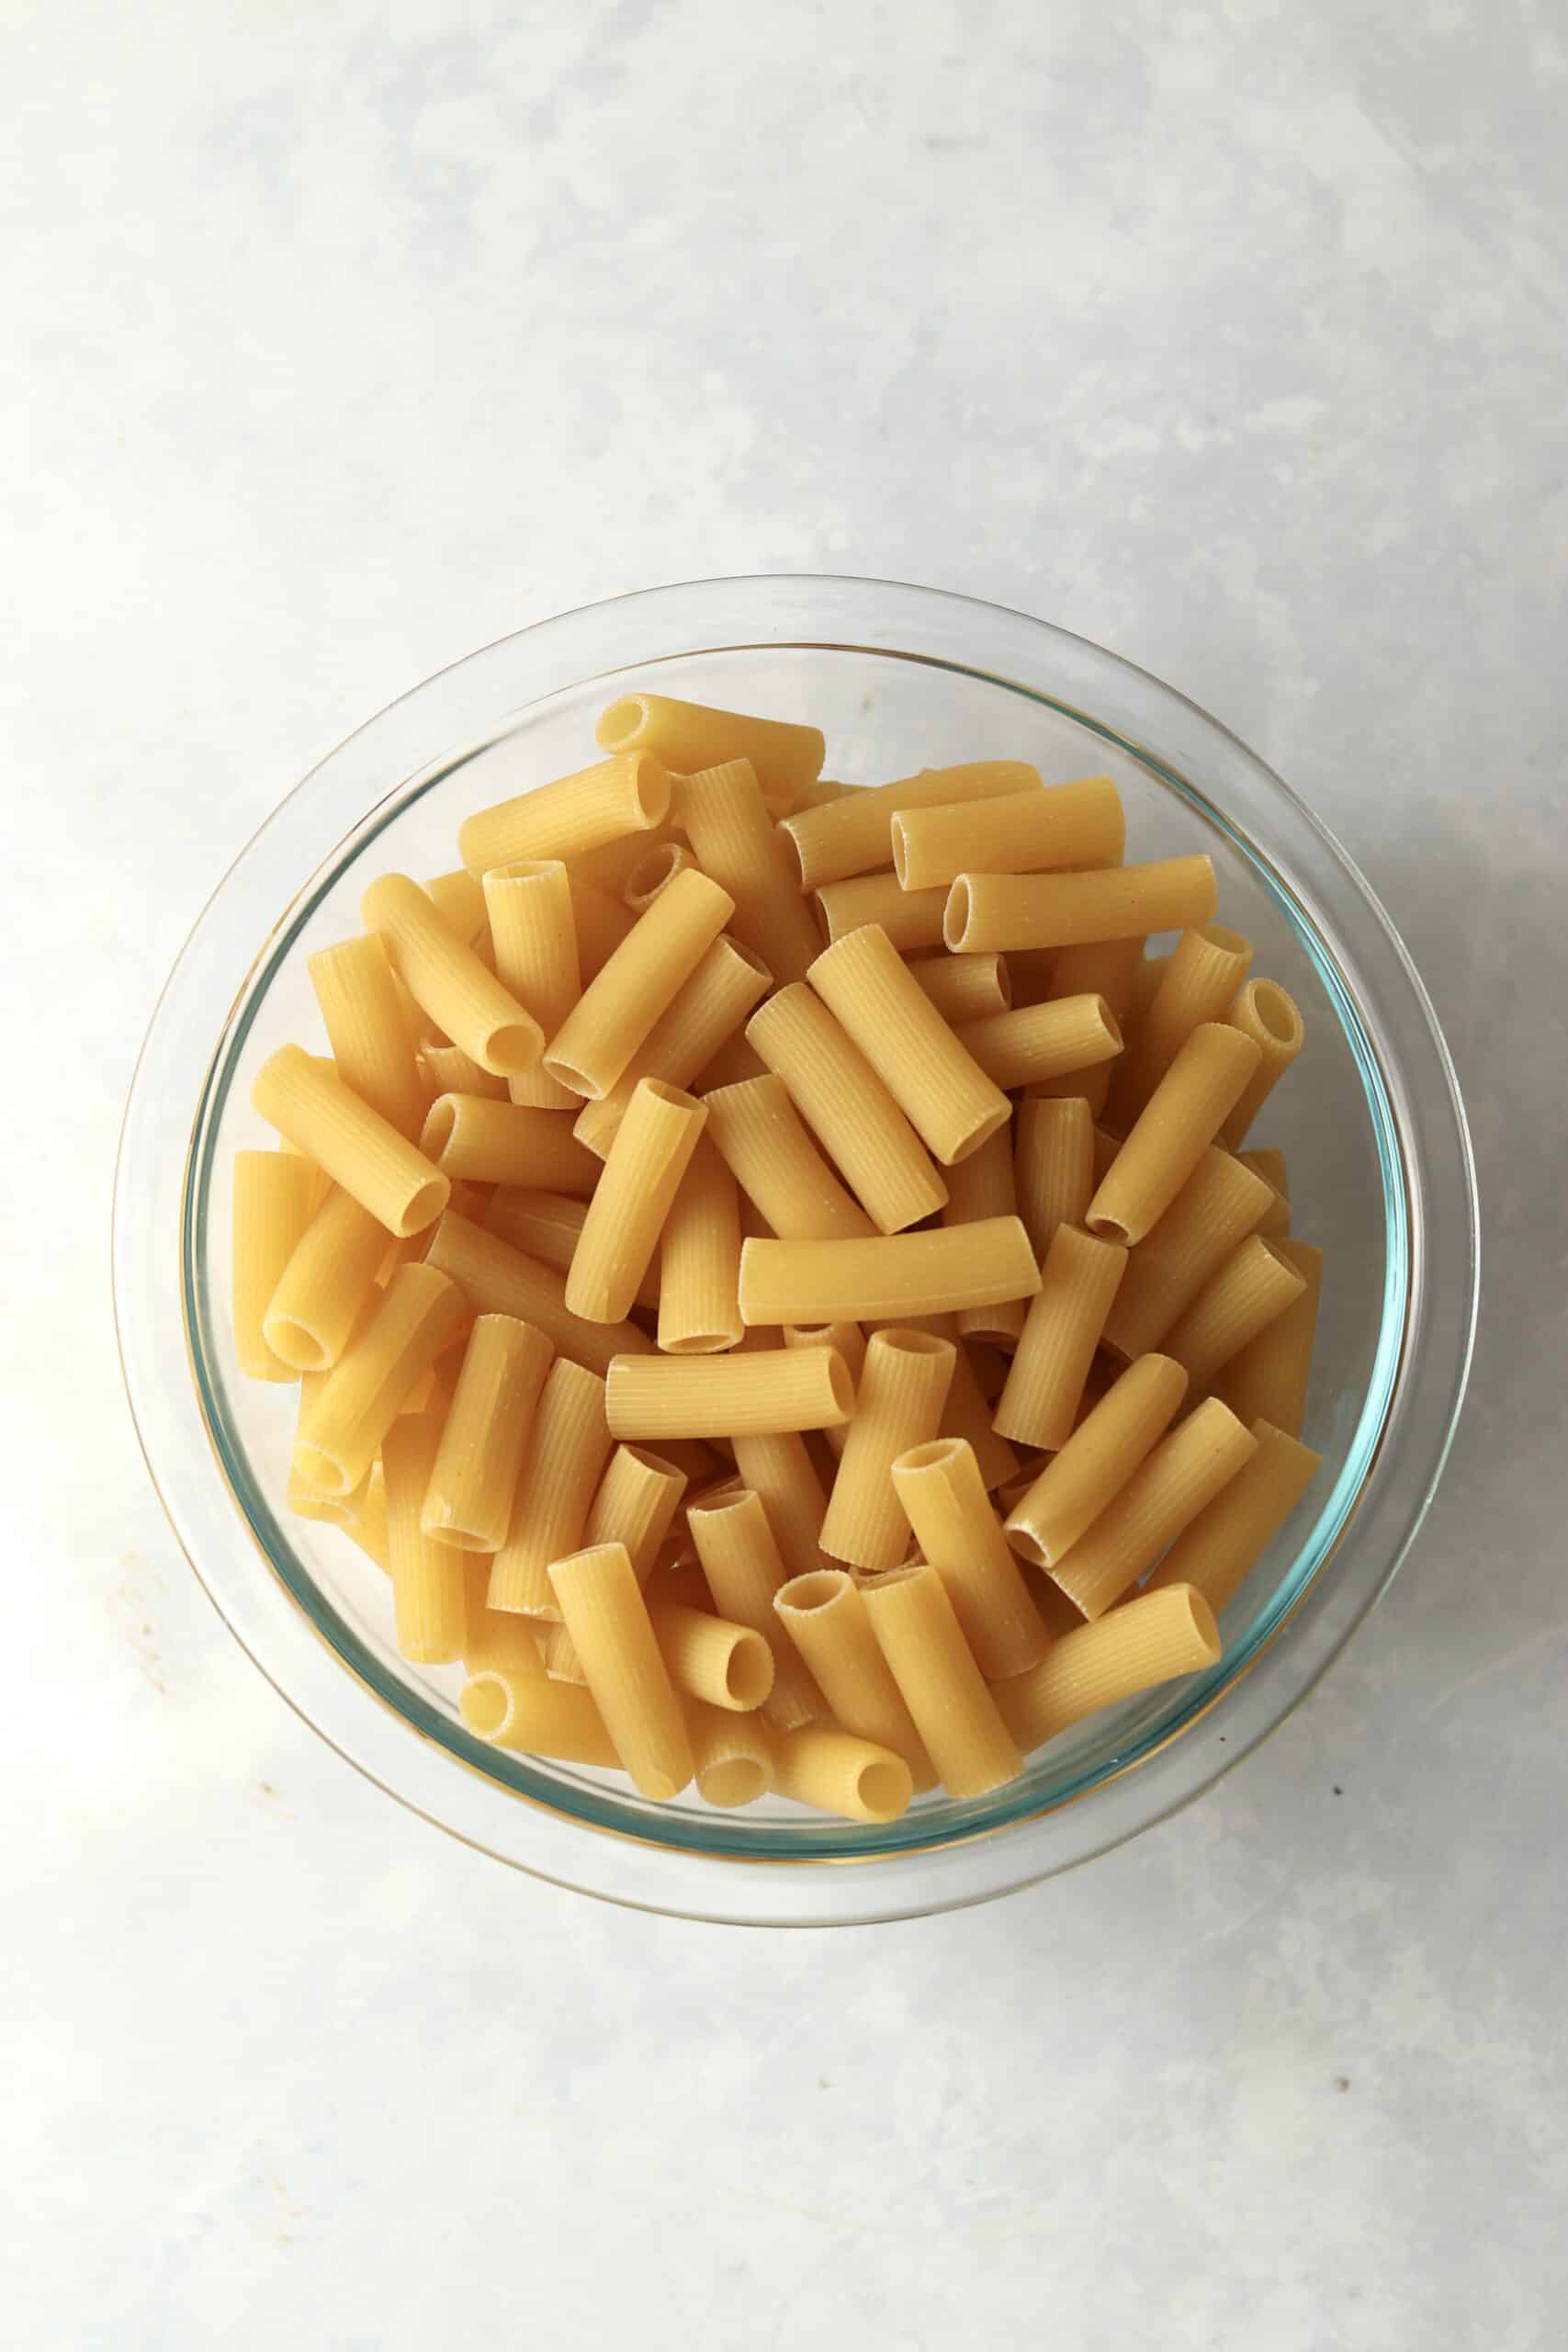 uncooked rigatoni pasta